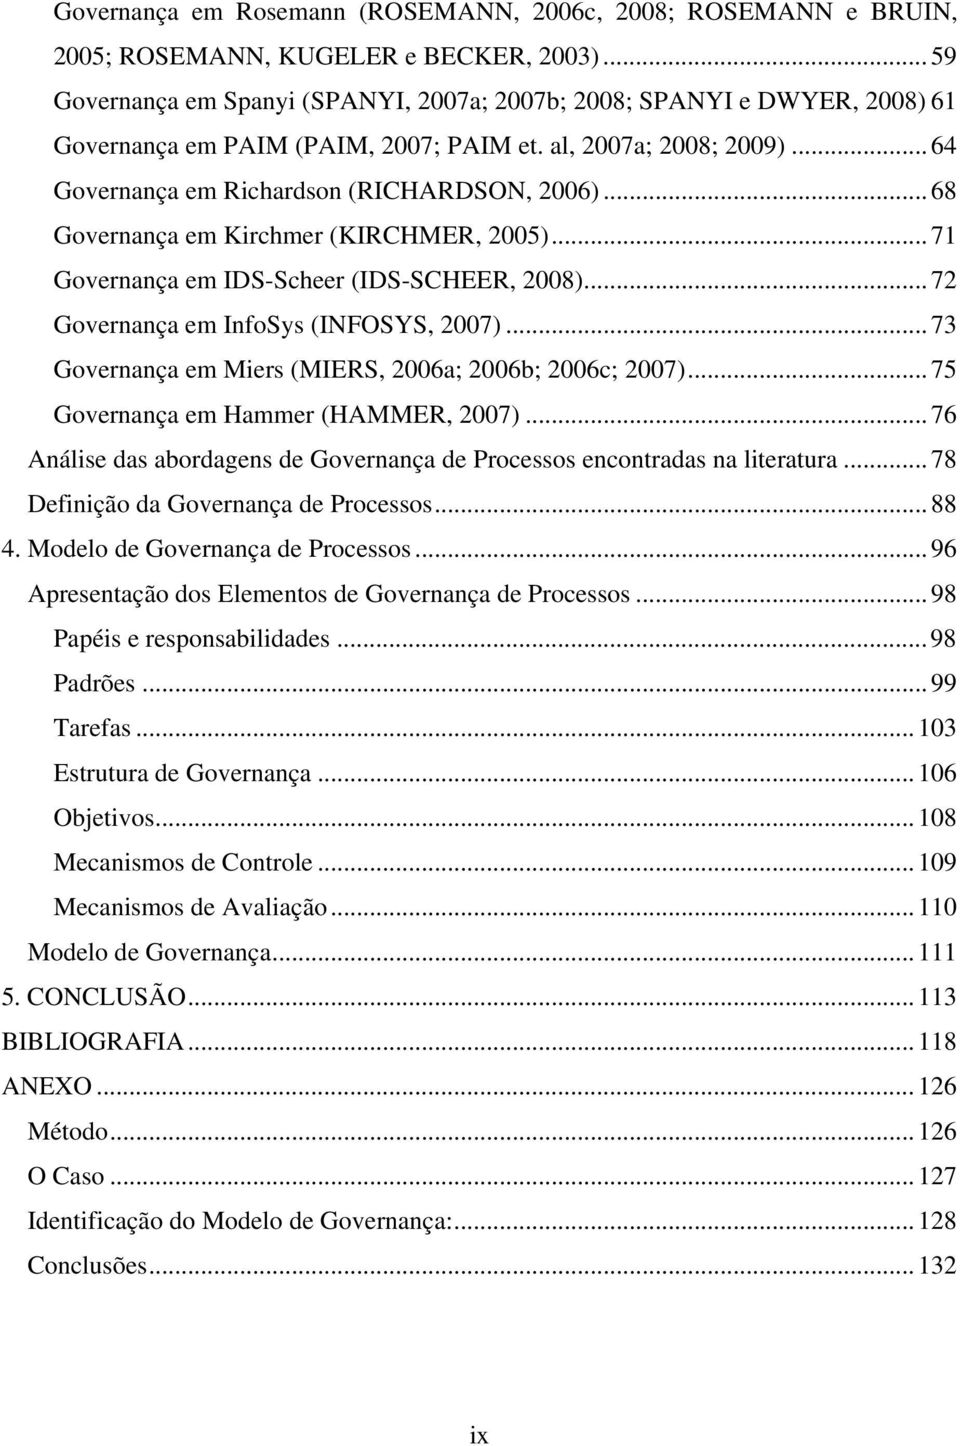 .. 68 Governança em Kirchmer (KIRCHMER, 2005)... 71 Governança em IDS-Scheer (IDS-SCHEER, 2008)... 72 Governança em InfoSys (INFOSYS, 2007)... 73 Governança em Miers (MIERS, 2006a; 2006b; 2006c; 2007).